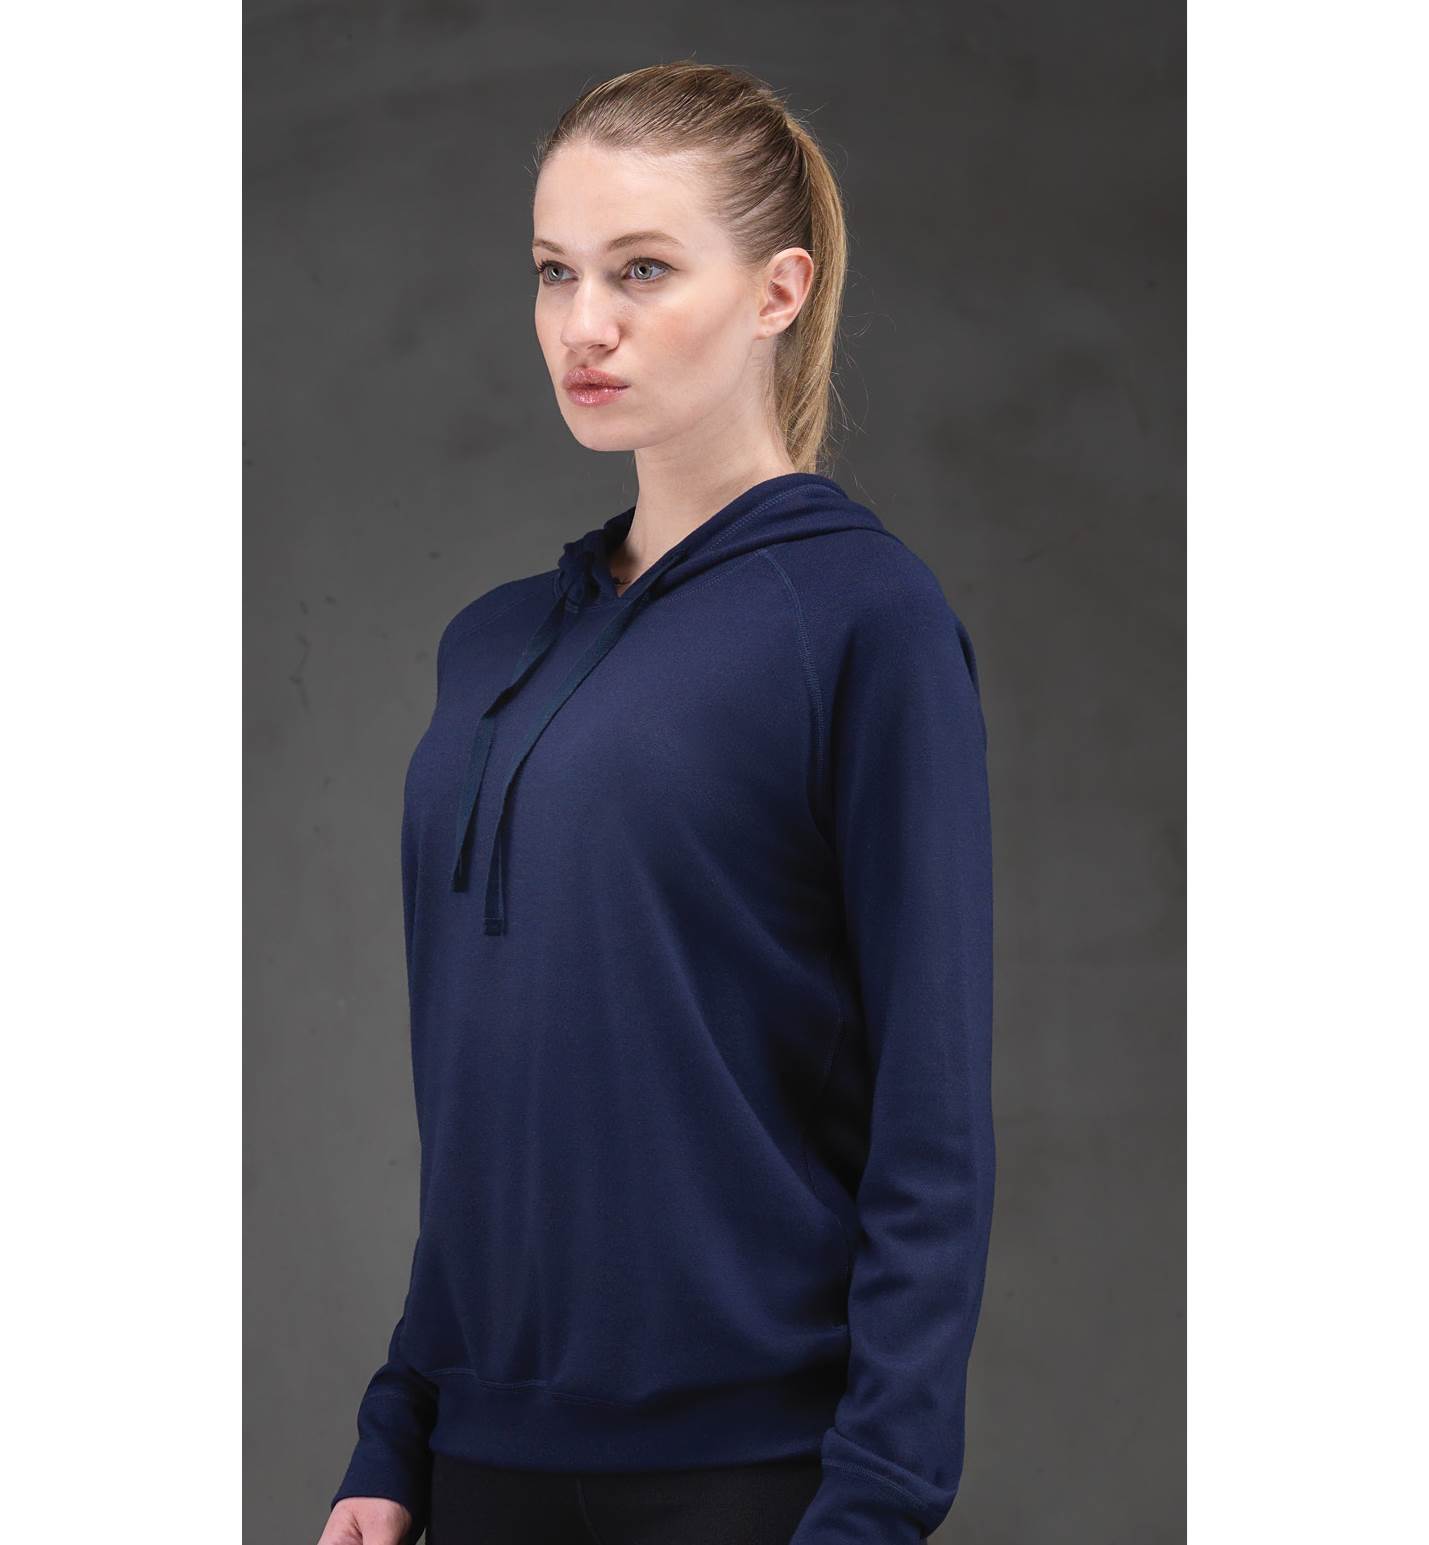 Kadın Termal Kapşonlu Sweatshirt 2. Seviye 5938 - Mavi - 1